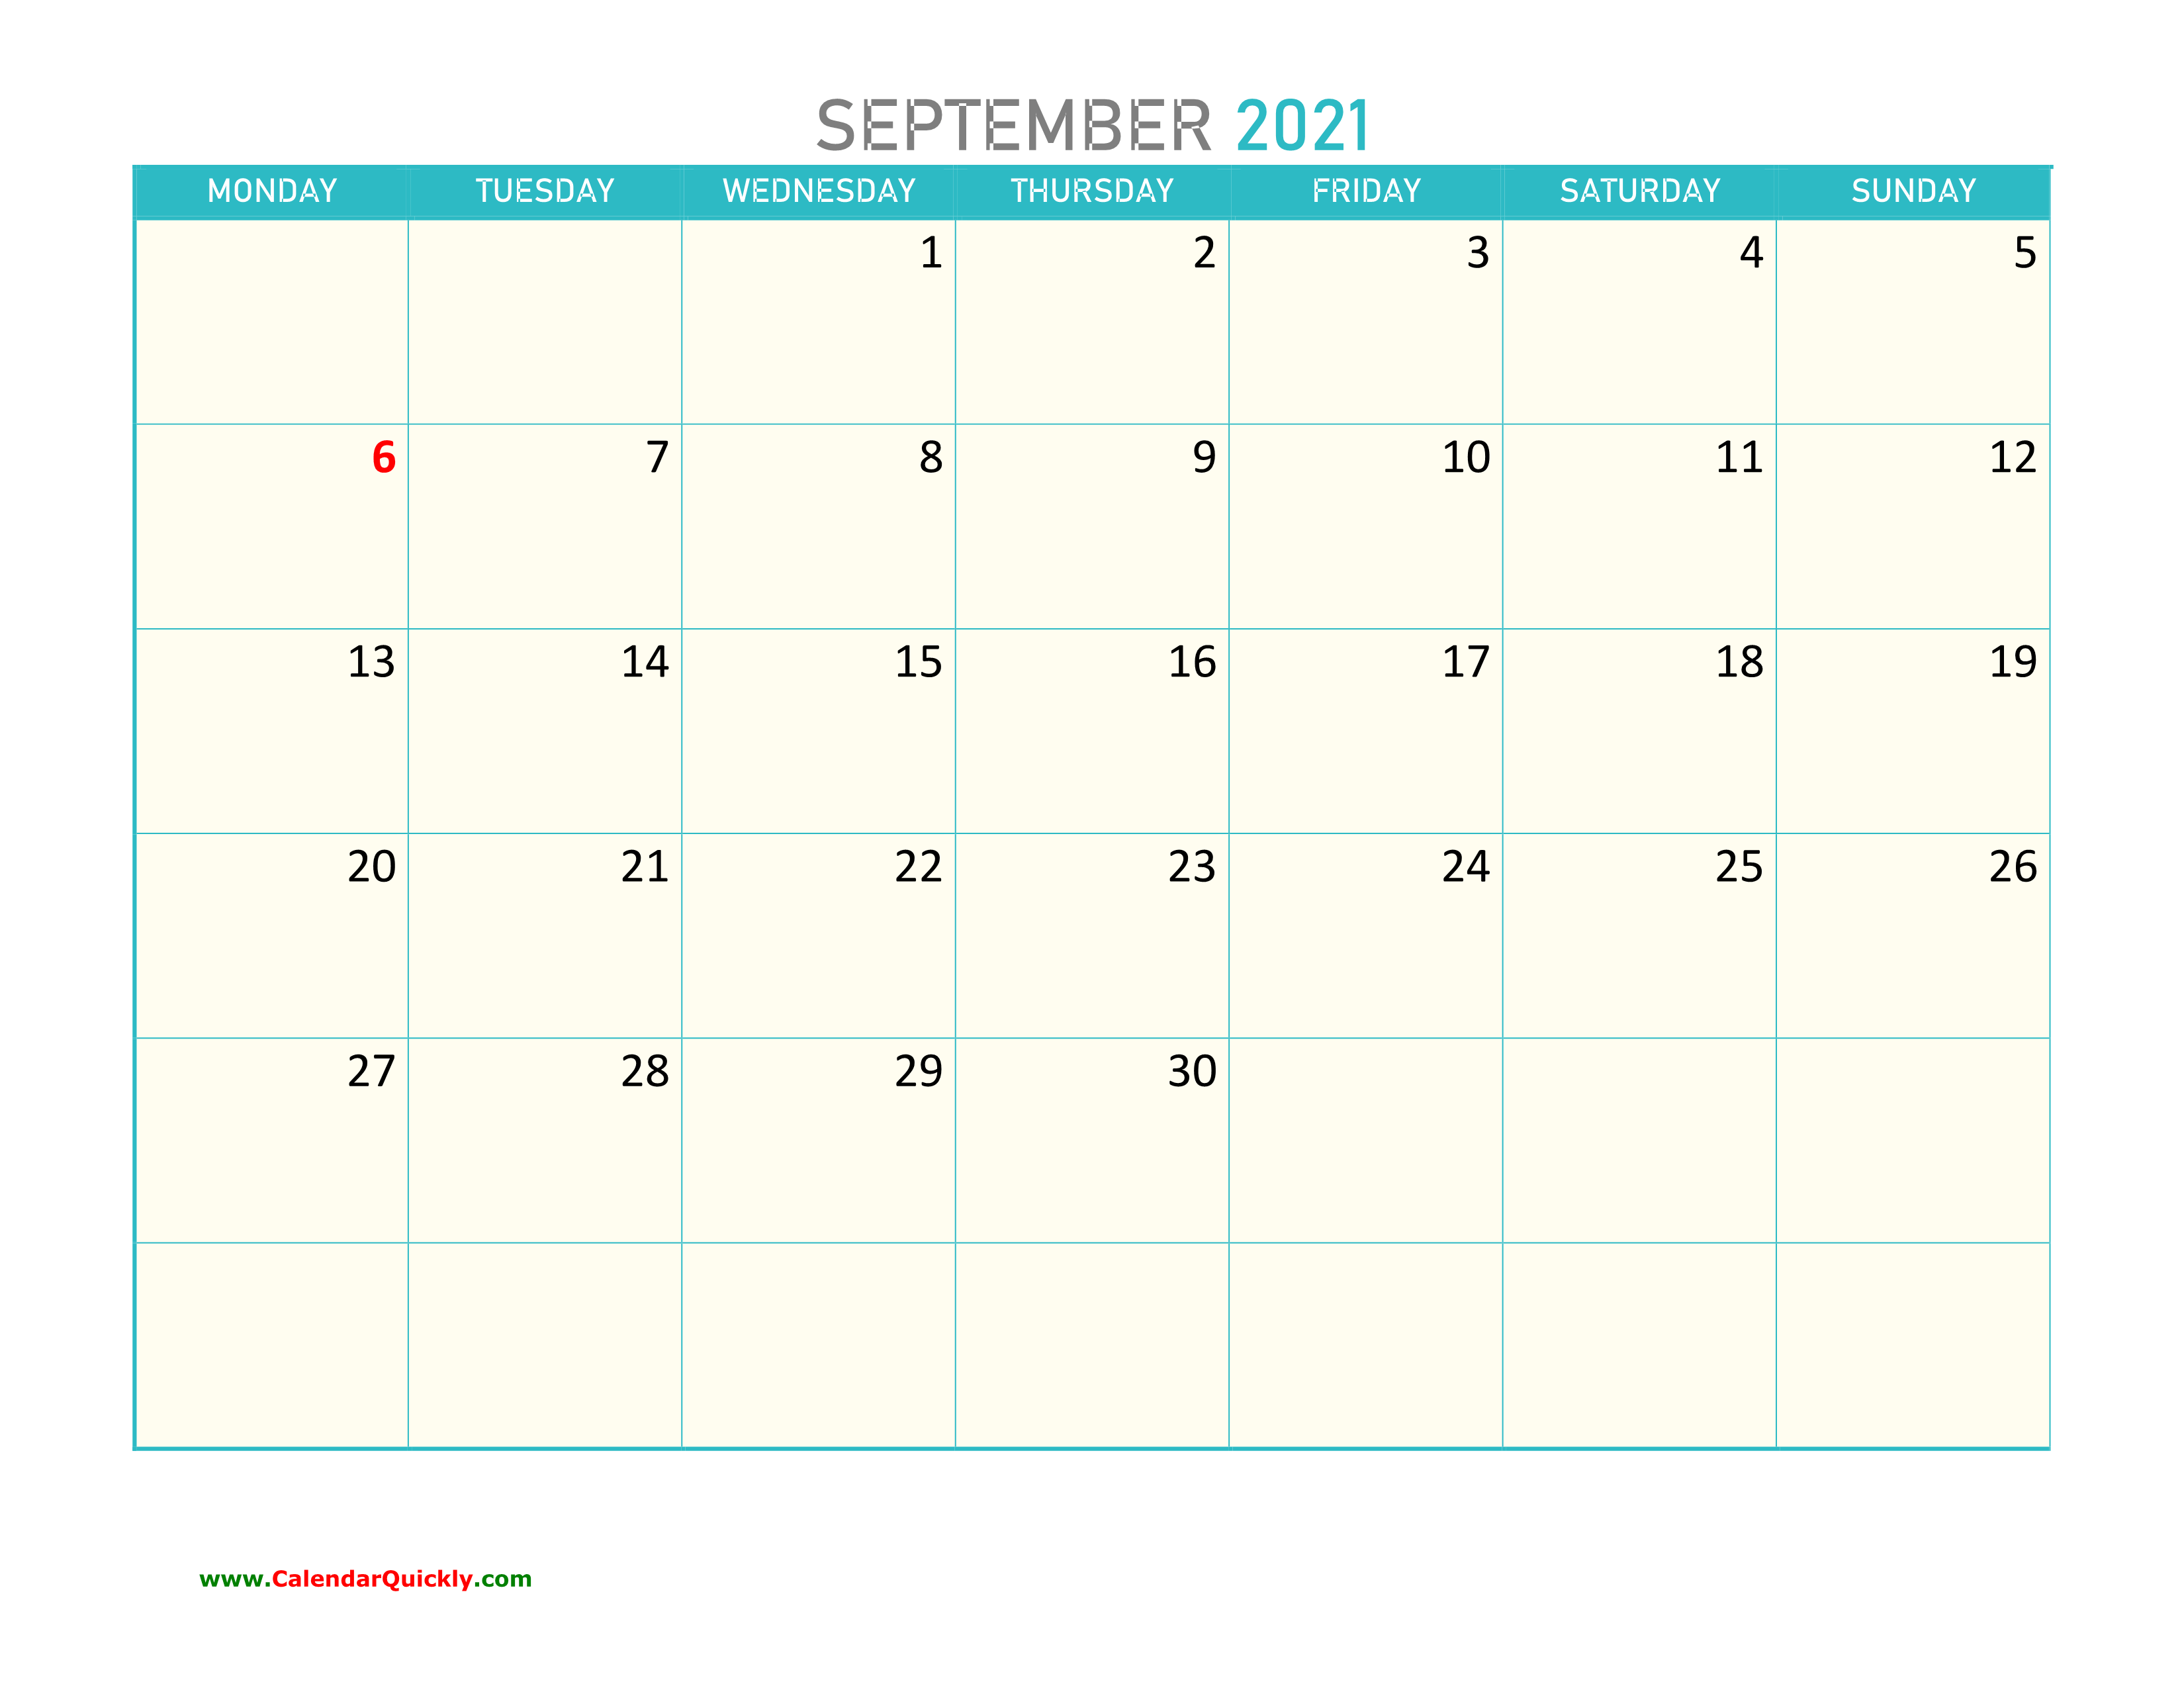 September Monday 2021 Calendar Printable | Calendar Quickly